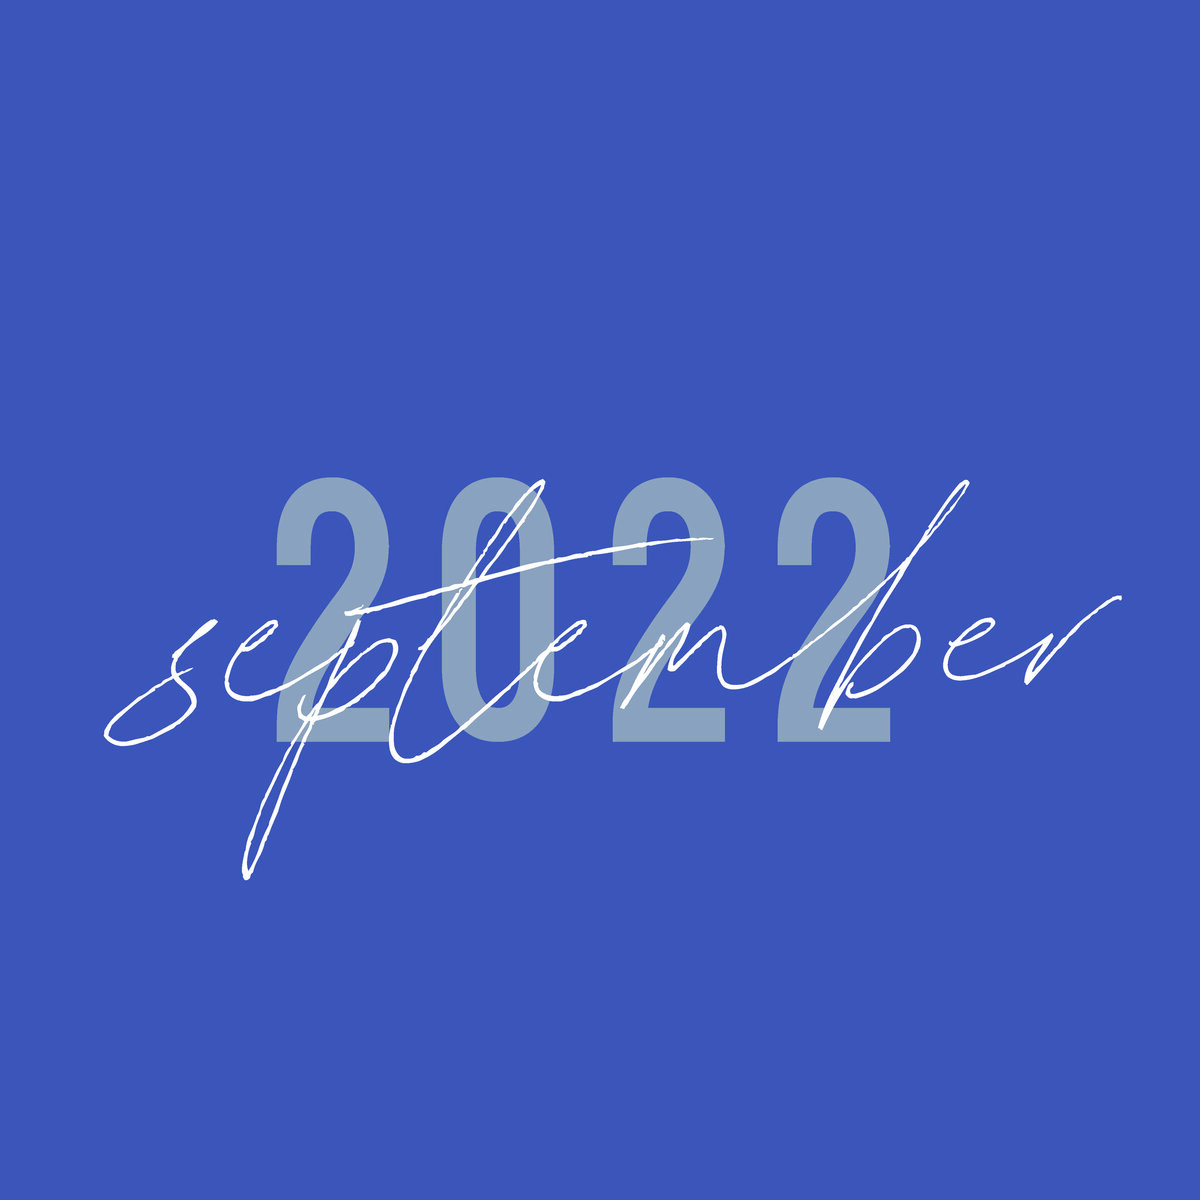 September_2022-01